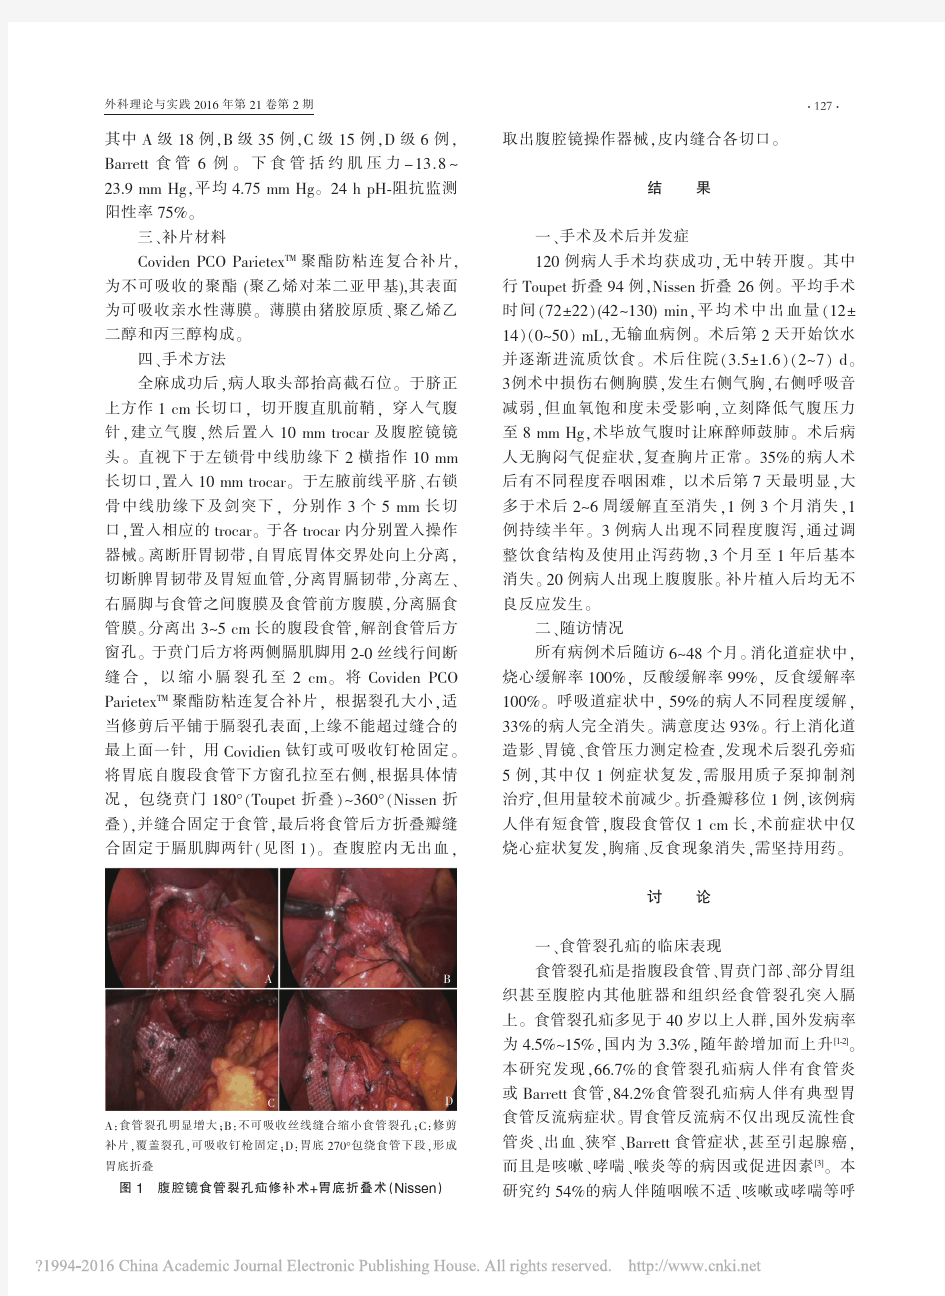 2016 防粘连复合补片在腹腔镜食管裂孔疝修补术中的应用_田书瑞